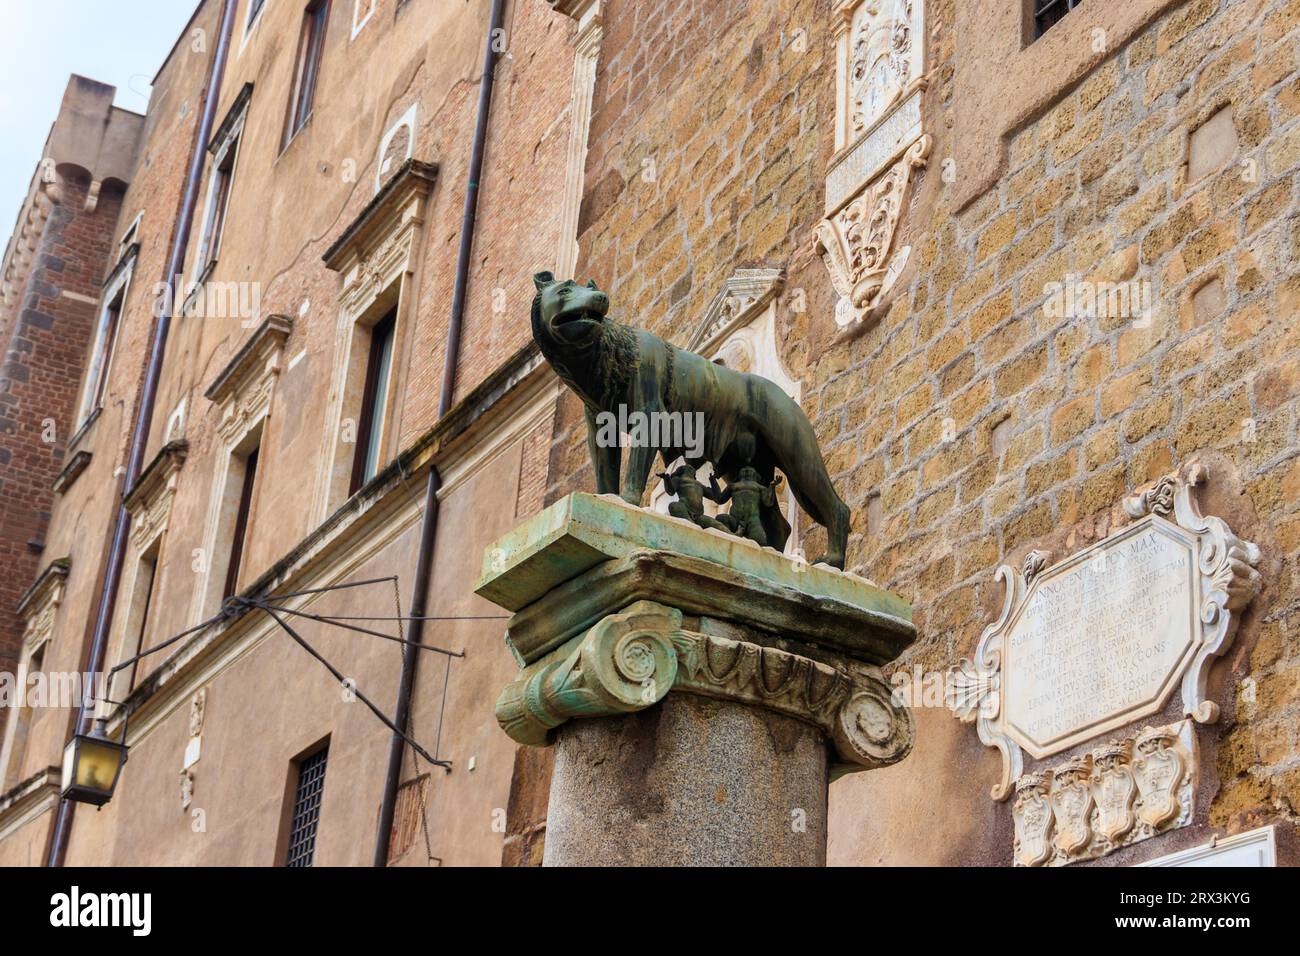 Capitoline Wolf, sculpture en bronze de la mythique louve allaitant les jumeaux Romulus et Remus, à Rome, Italie. Scène de la légende du f Banque D'Images